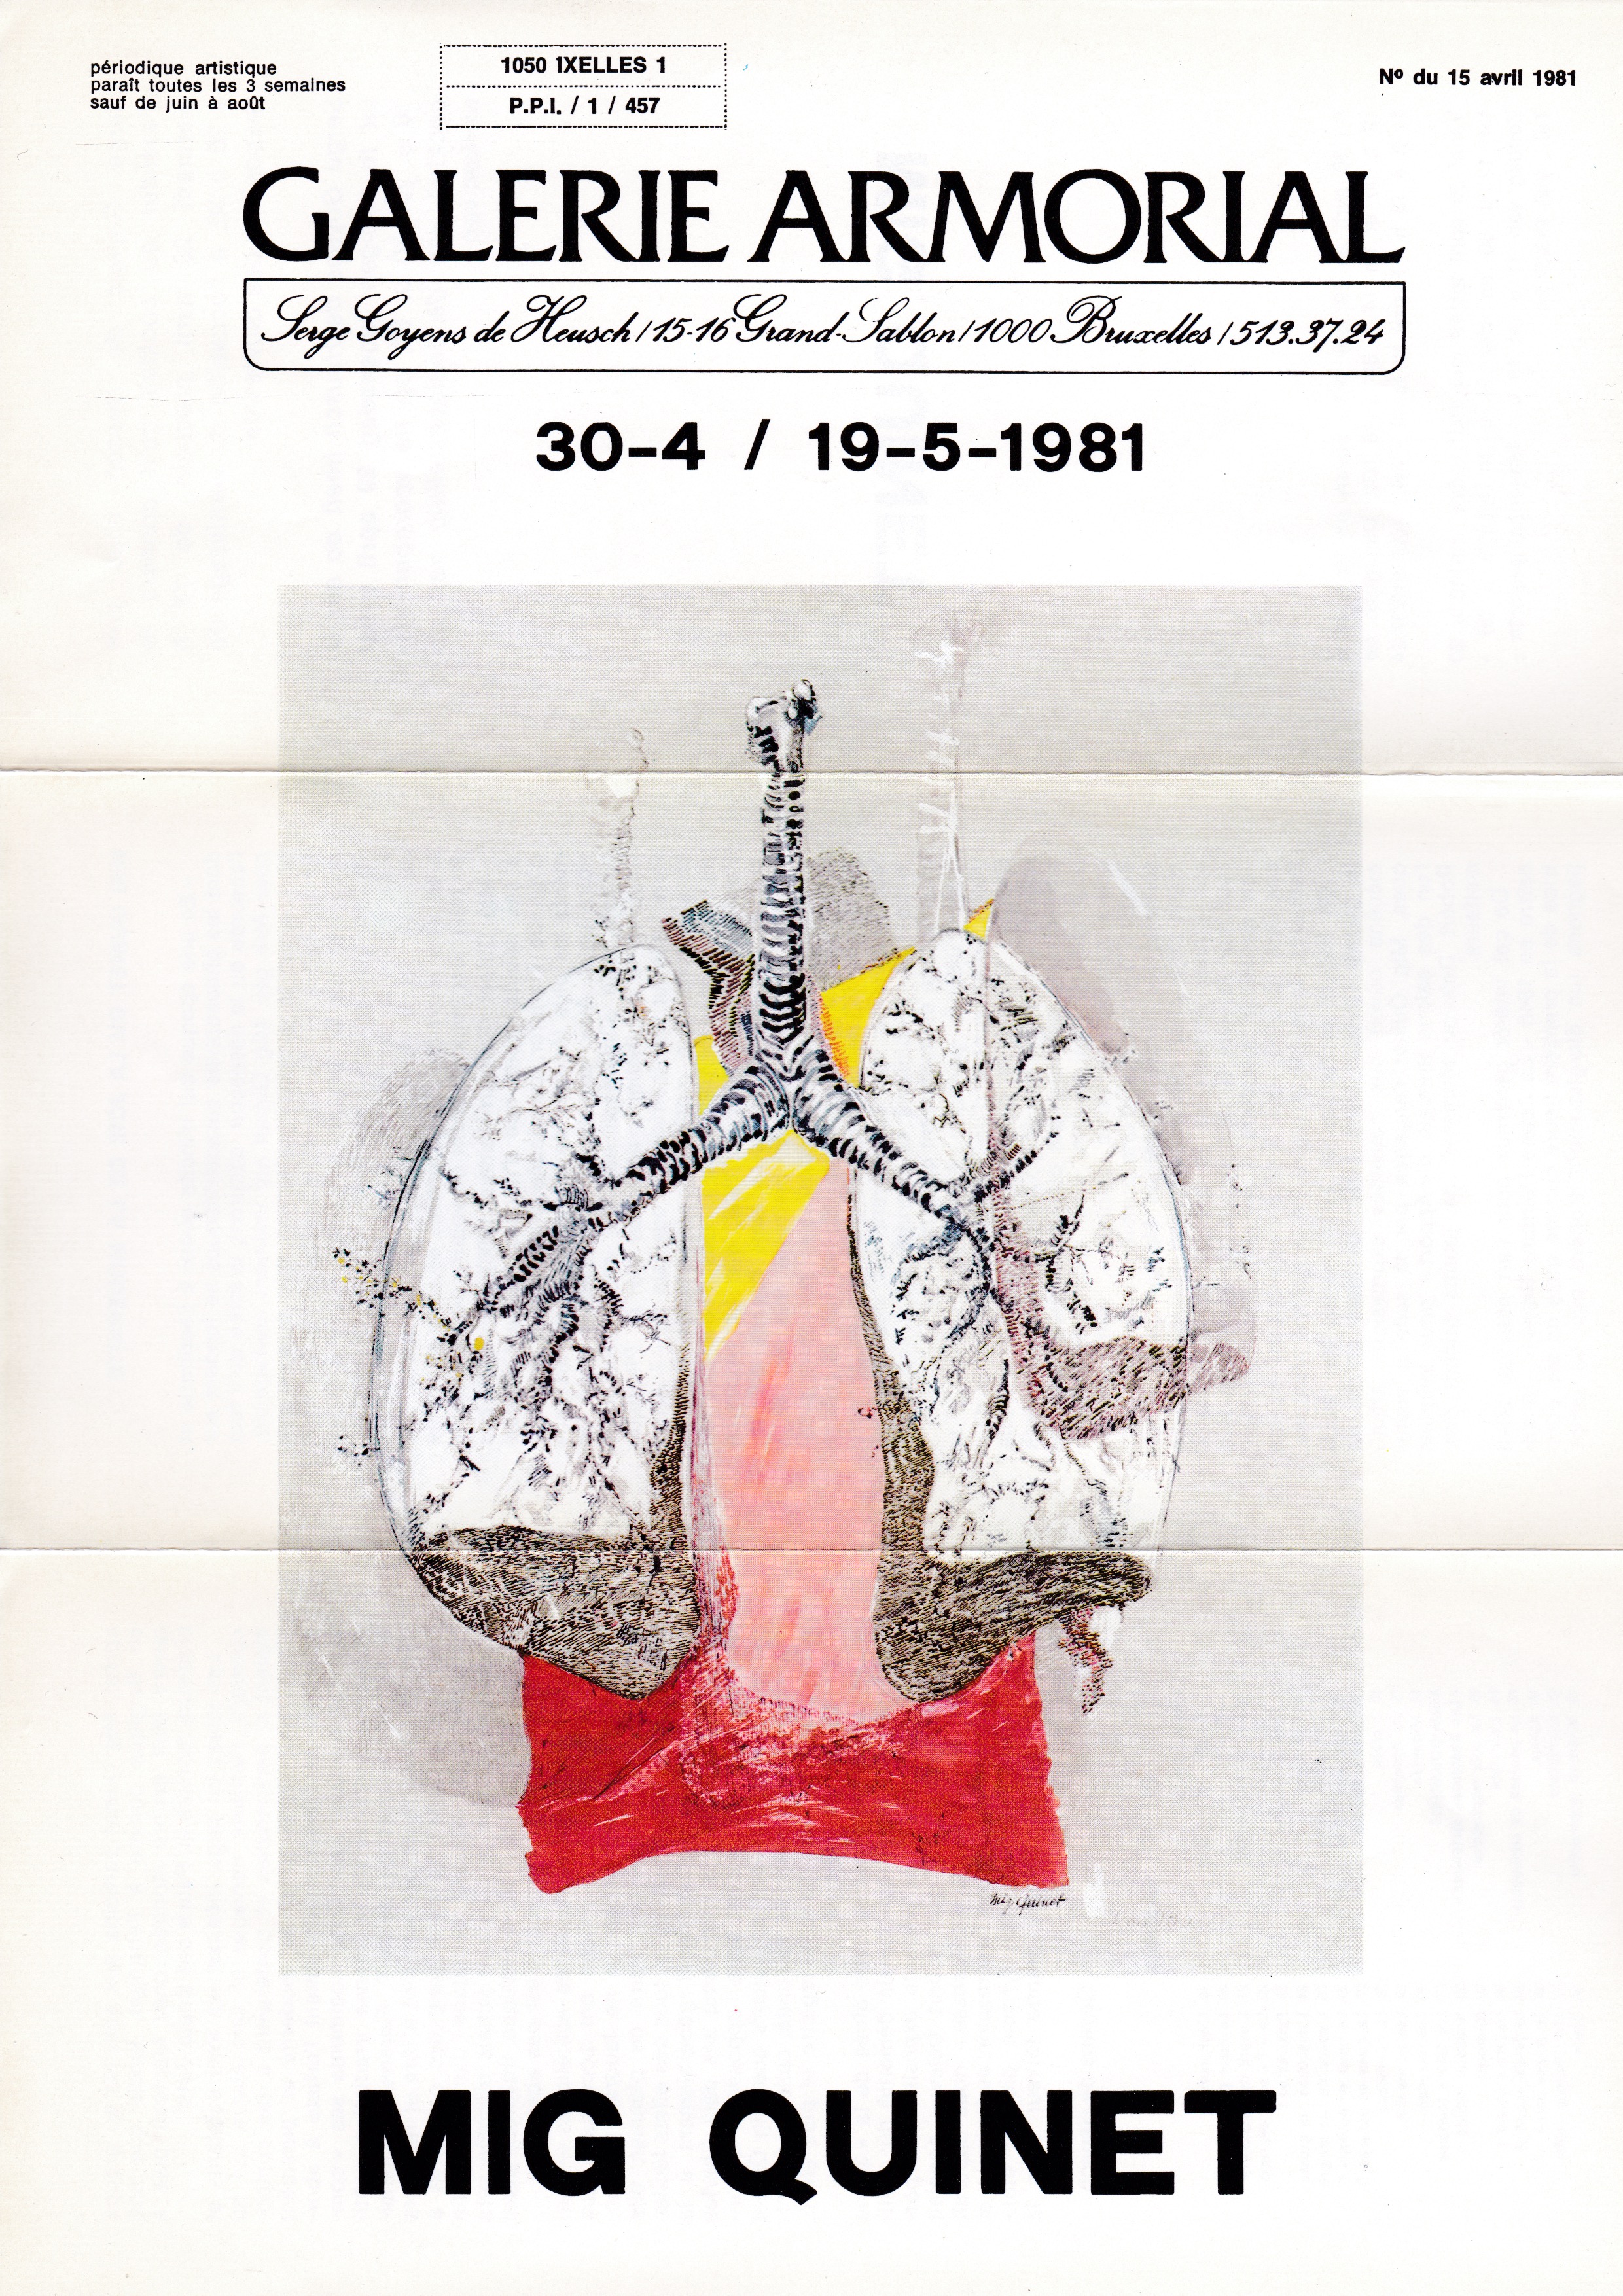 Mig Quinet, galerie armorial, Bruxelles, 1981